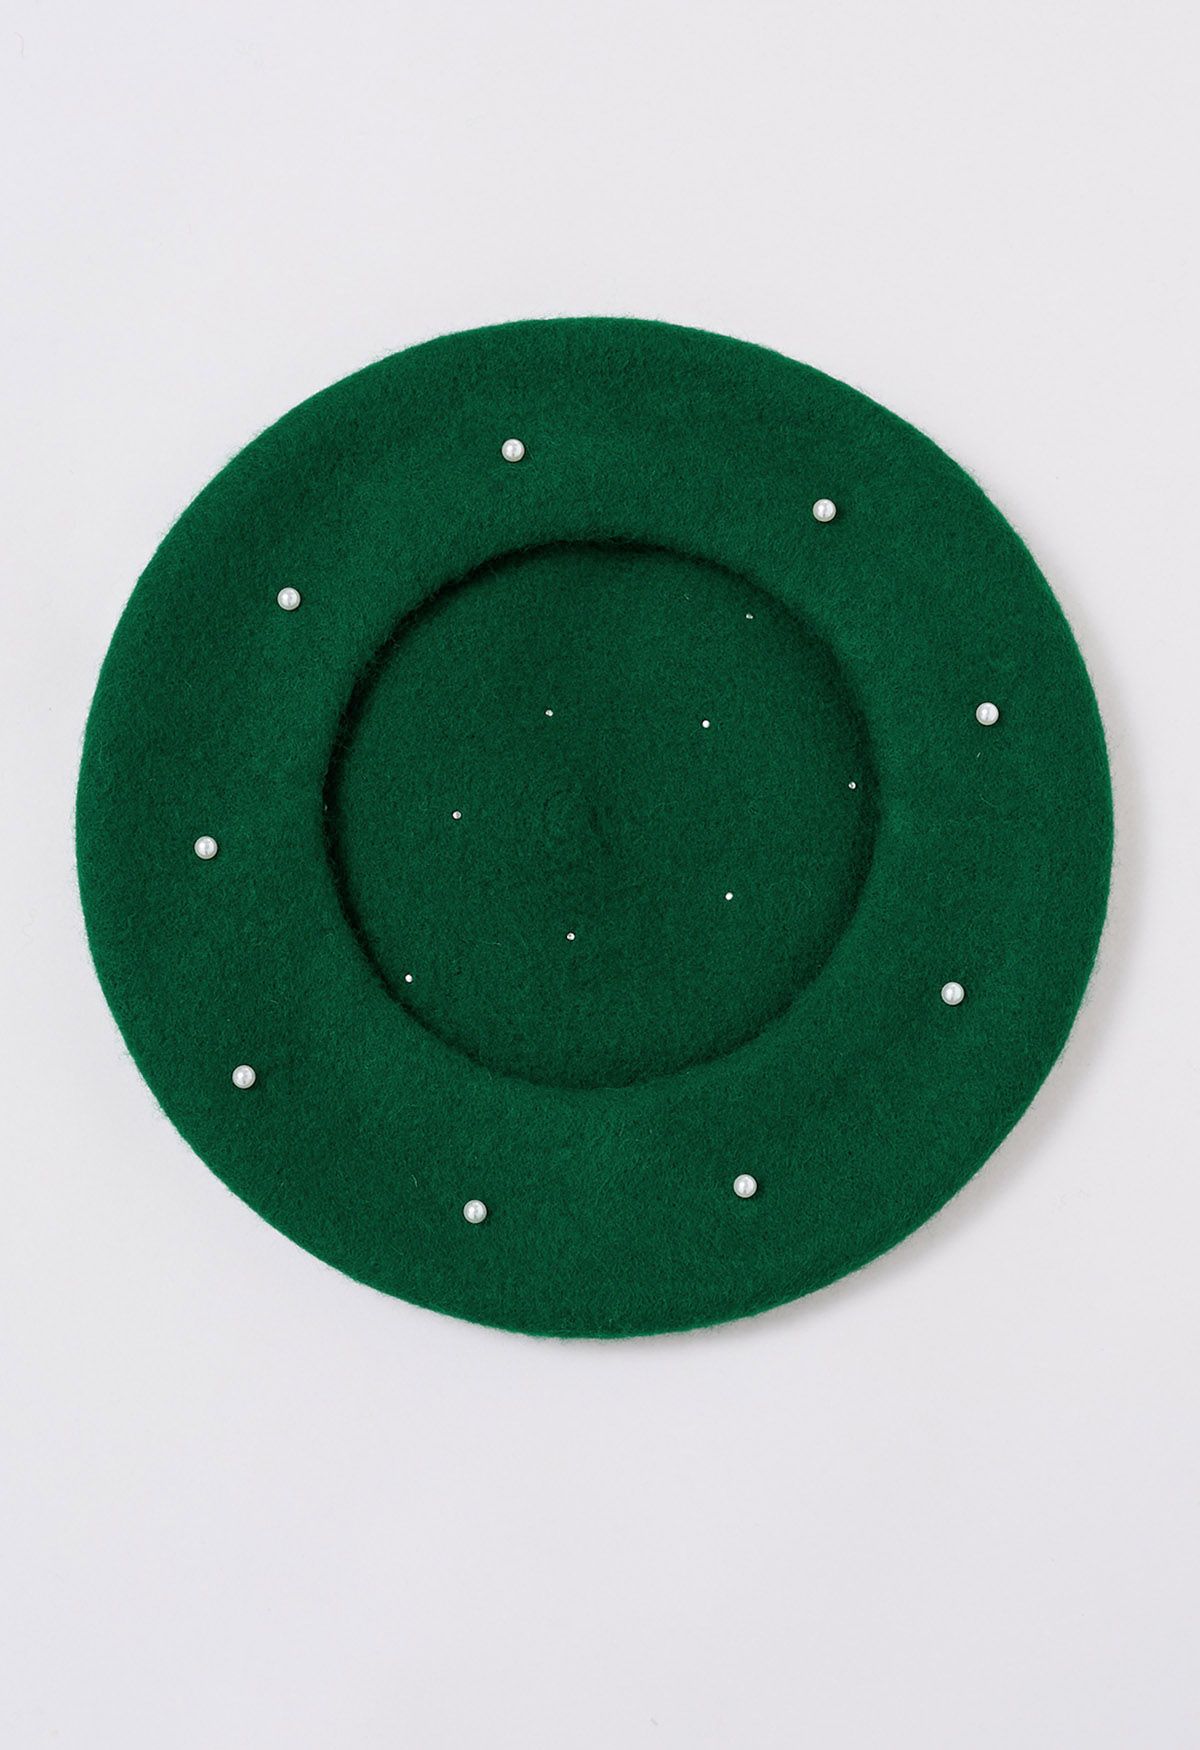 قبعة بيريه مصنوعة يدويًا من مزيج الصوف واللؤلؤ باللون الأخضر الداكن